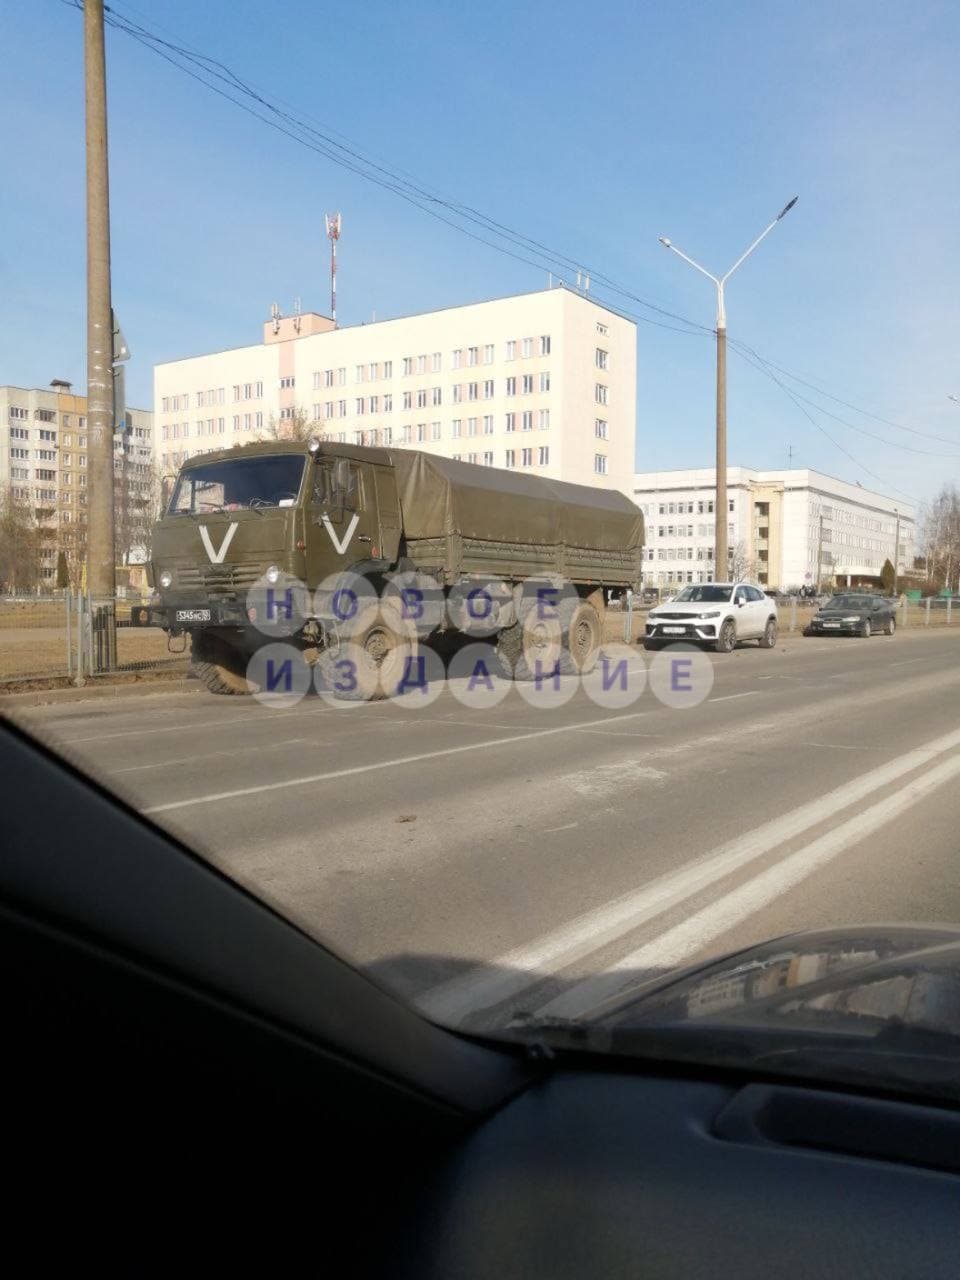 Вторжение РФ: что происходит в городах Украины (онлайн) - 10 - изображение